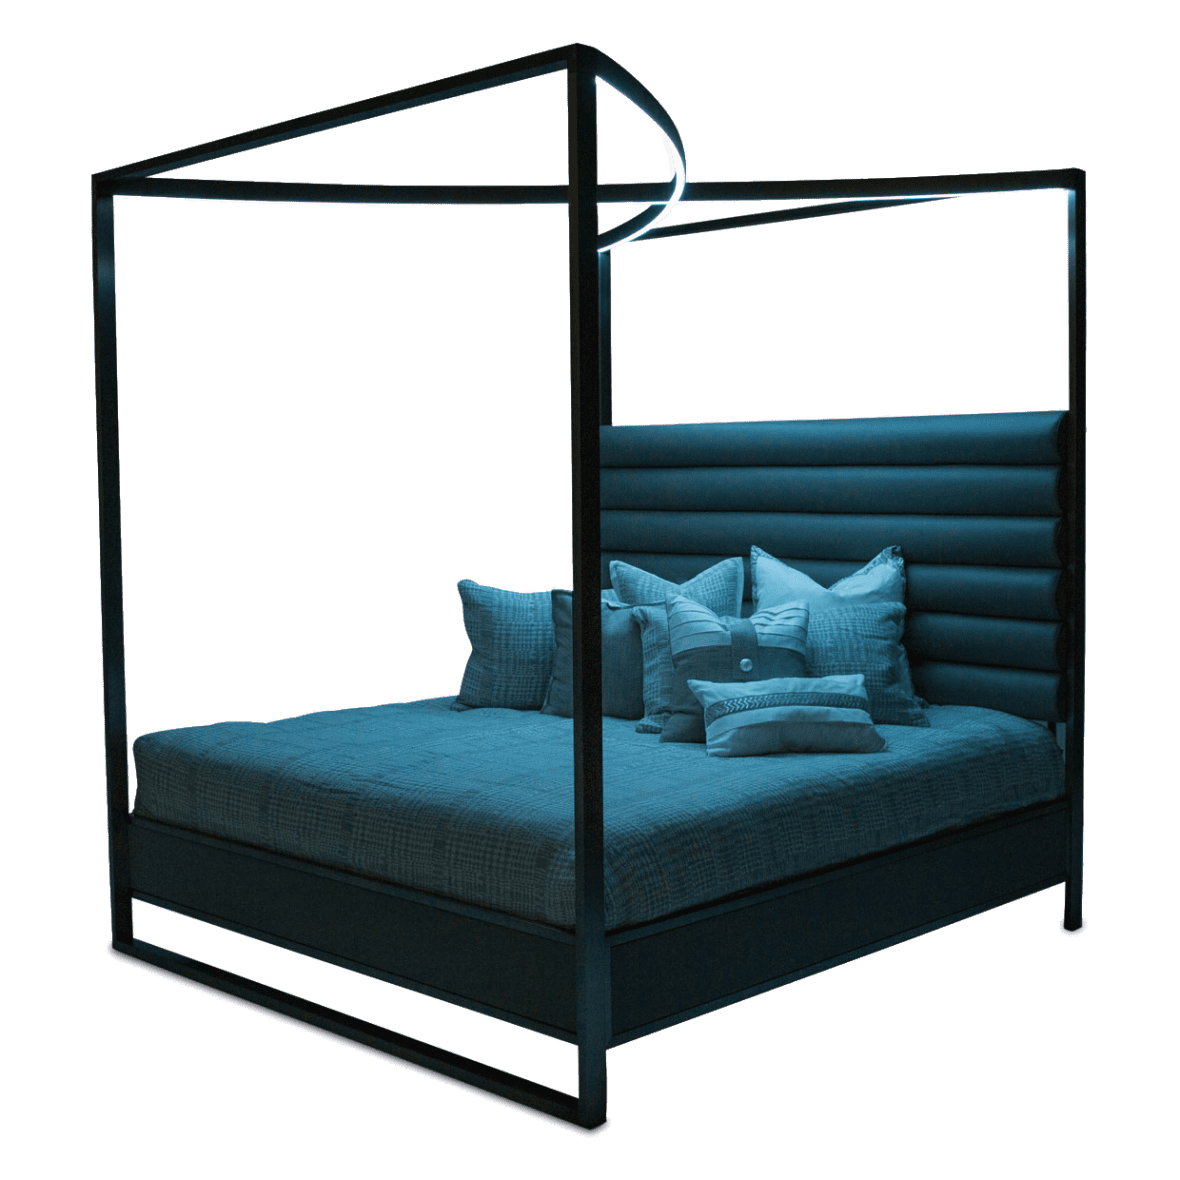 Кровать с декоративным балдахином с подсветкой, размер Cal King